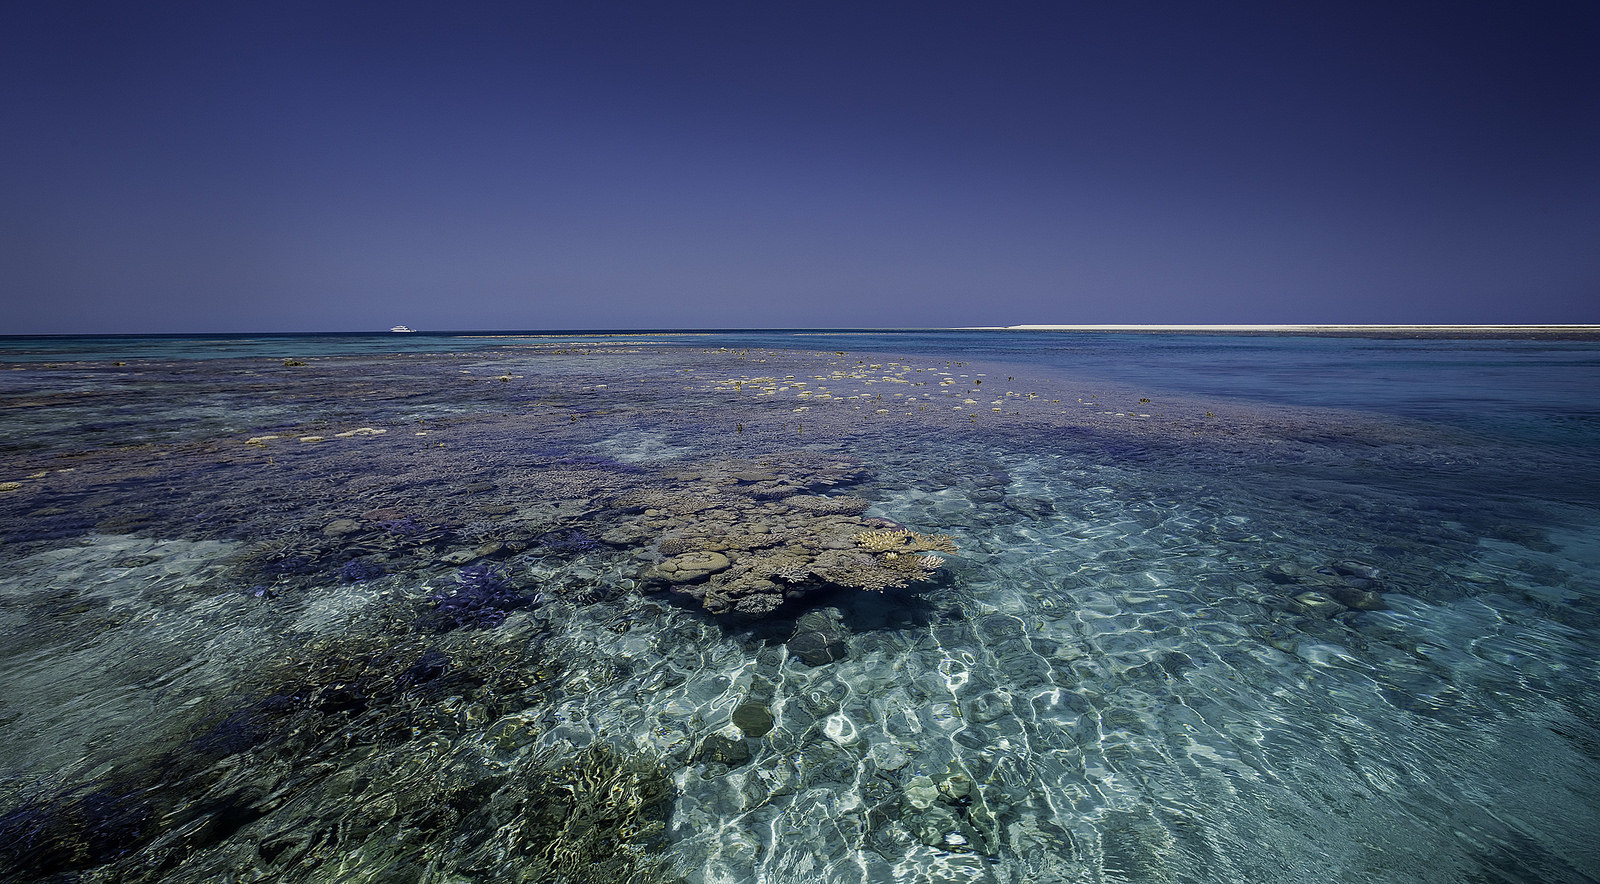 Индийский океан соленый. Рифы Роули. Одинокий риф. Брум Австралия. Шельф с рифами.